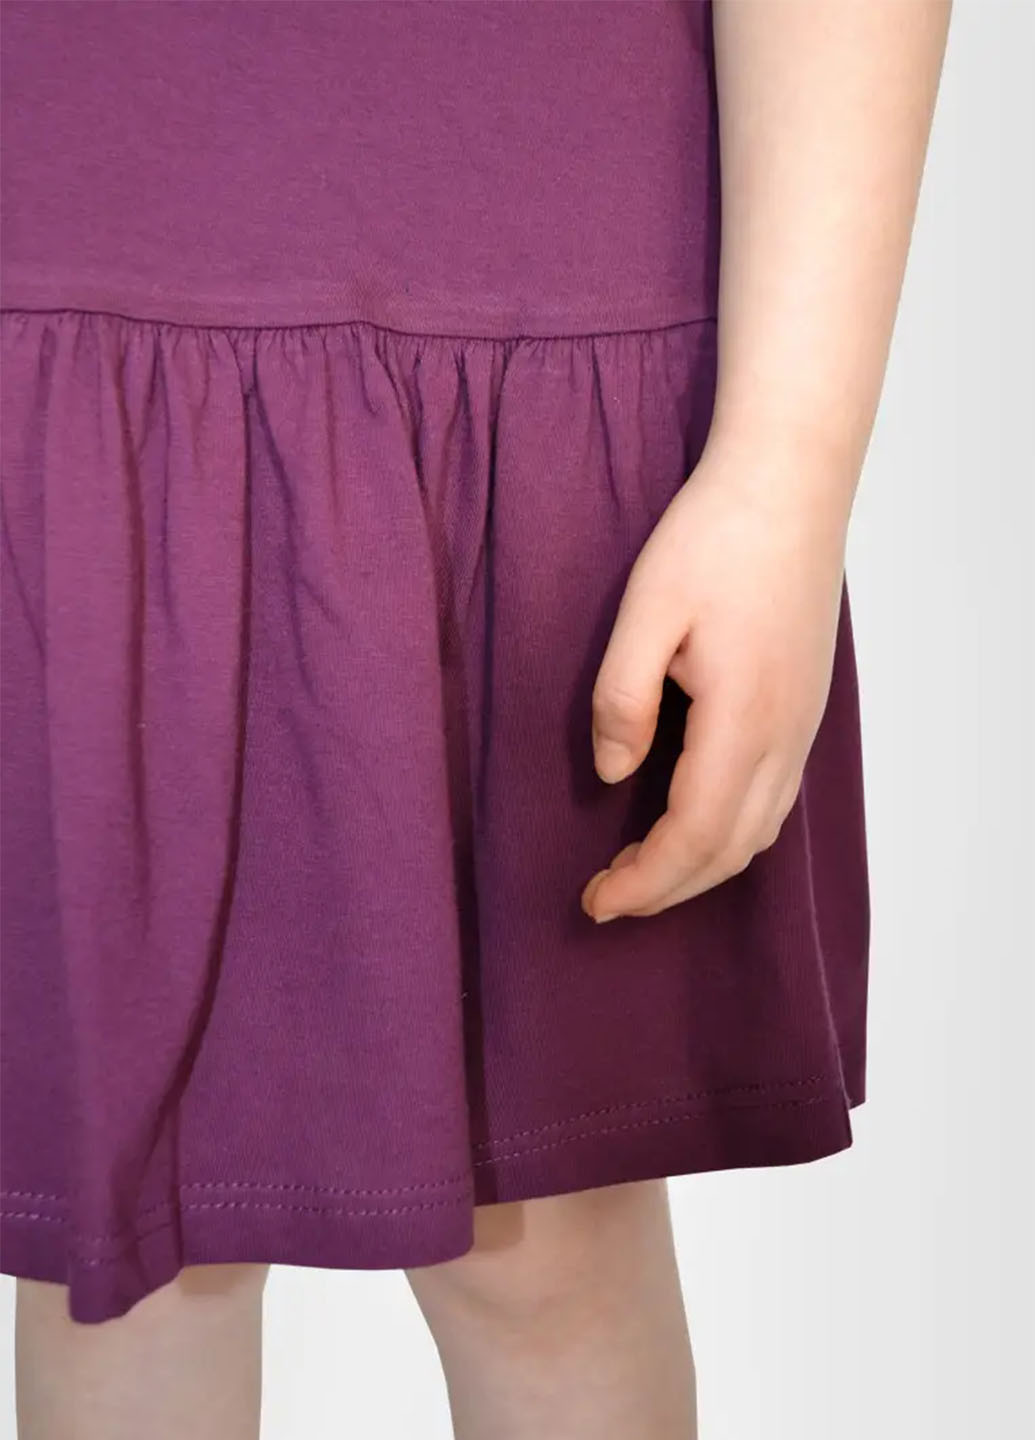 Бордовое платье для девочки Роза (258081970)